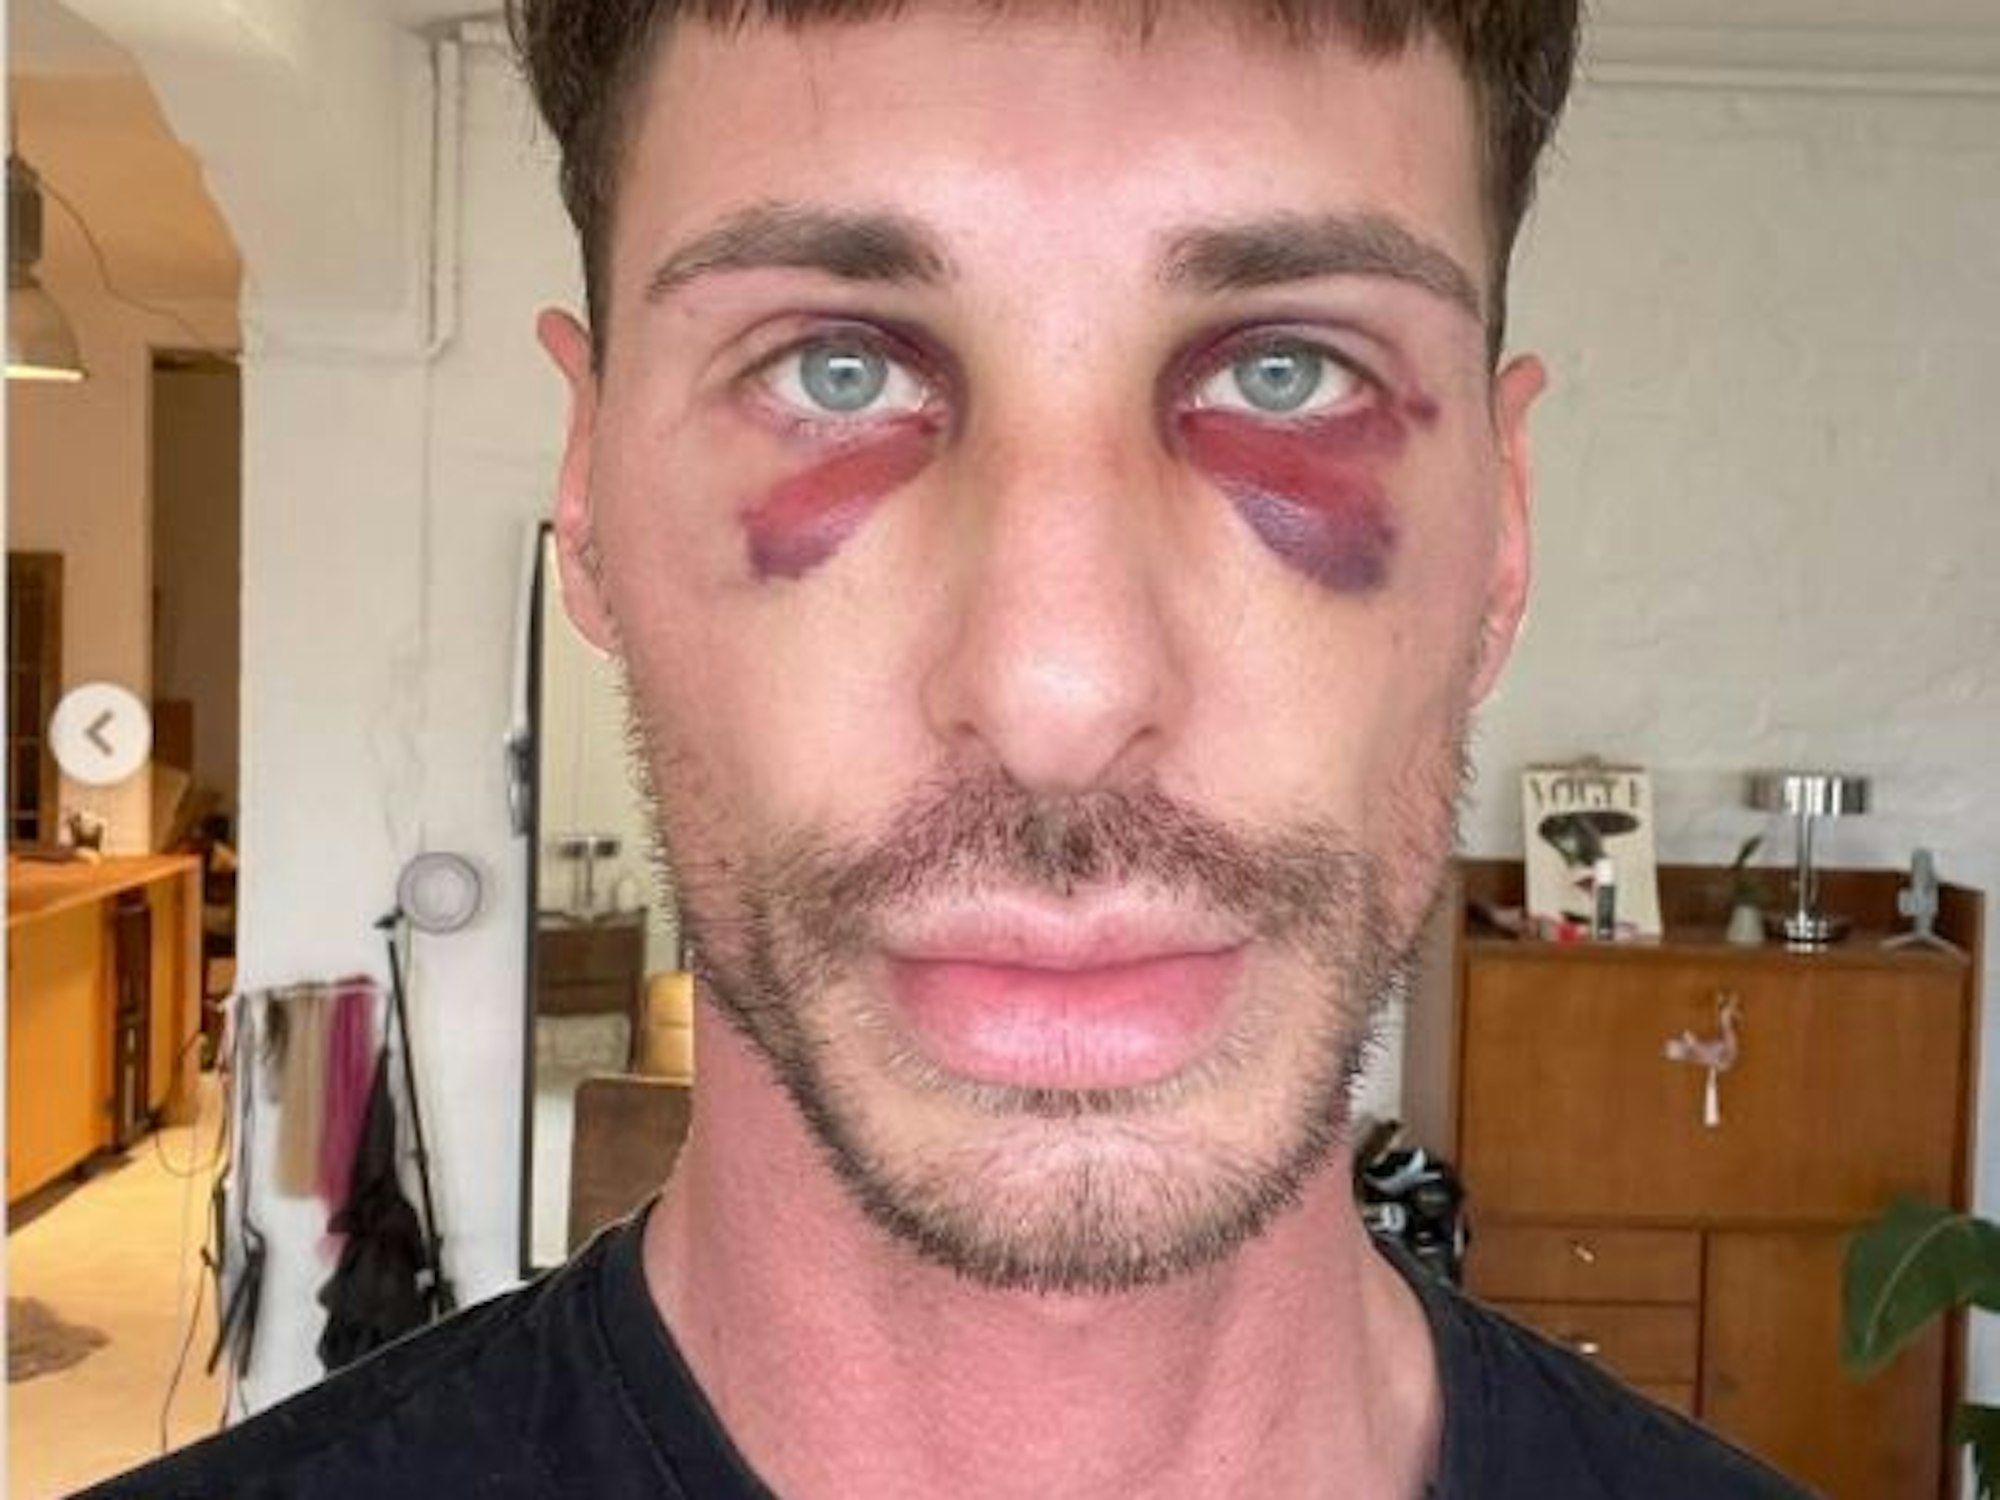 Pitzi Müller zeigt auf seinem Instagram-Account sein verletztes Gesicht, nachdem er angegriffen wurde.